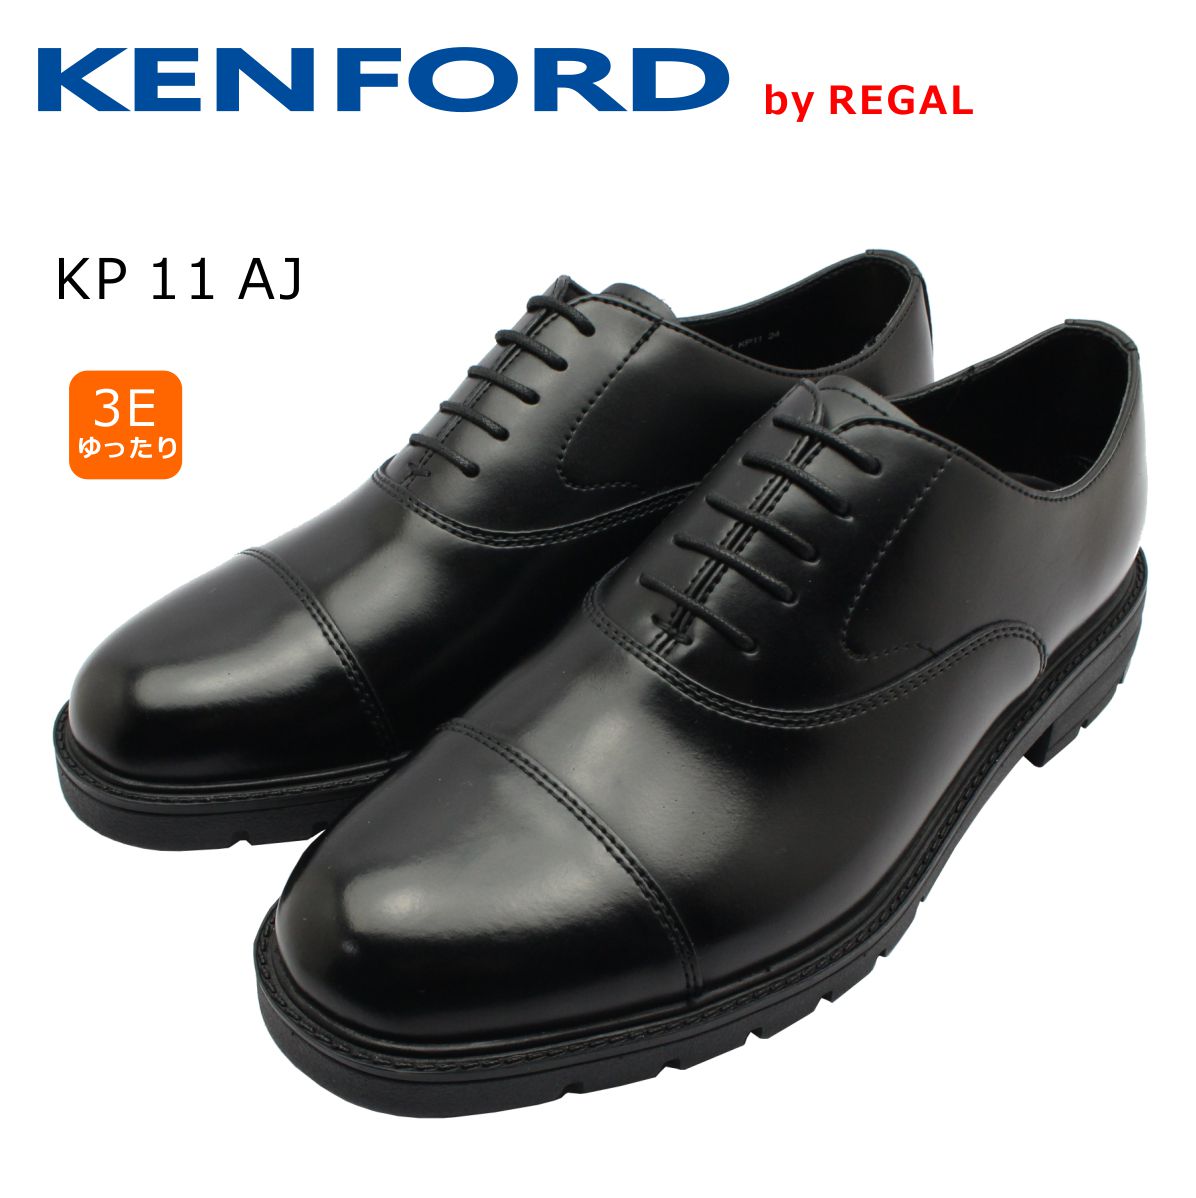 KENFORD ケンフォード メンズ KP11 AJ ブラック 3E ストレートチップ ビジネスシューズ 紳士靴 リーガル ミッキー靴店